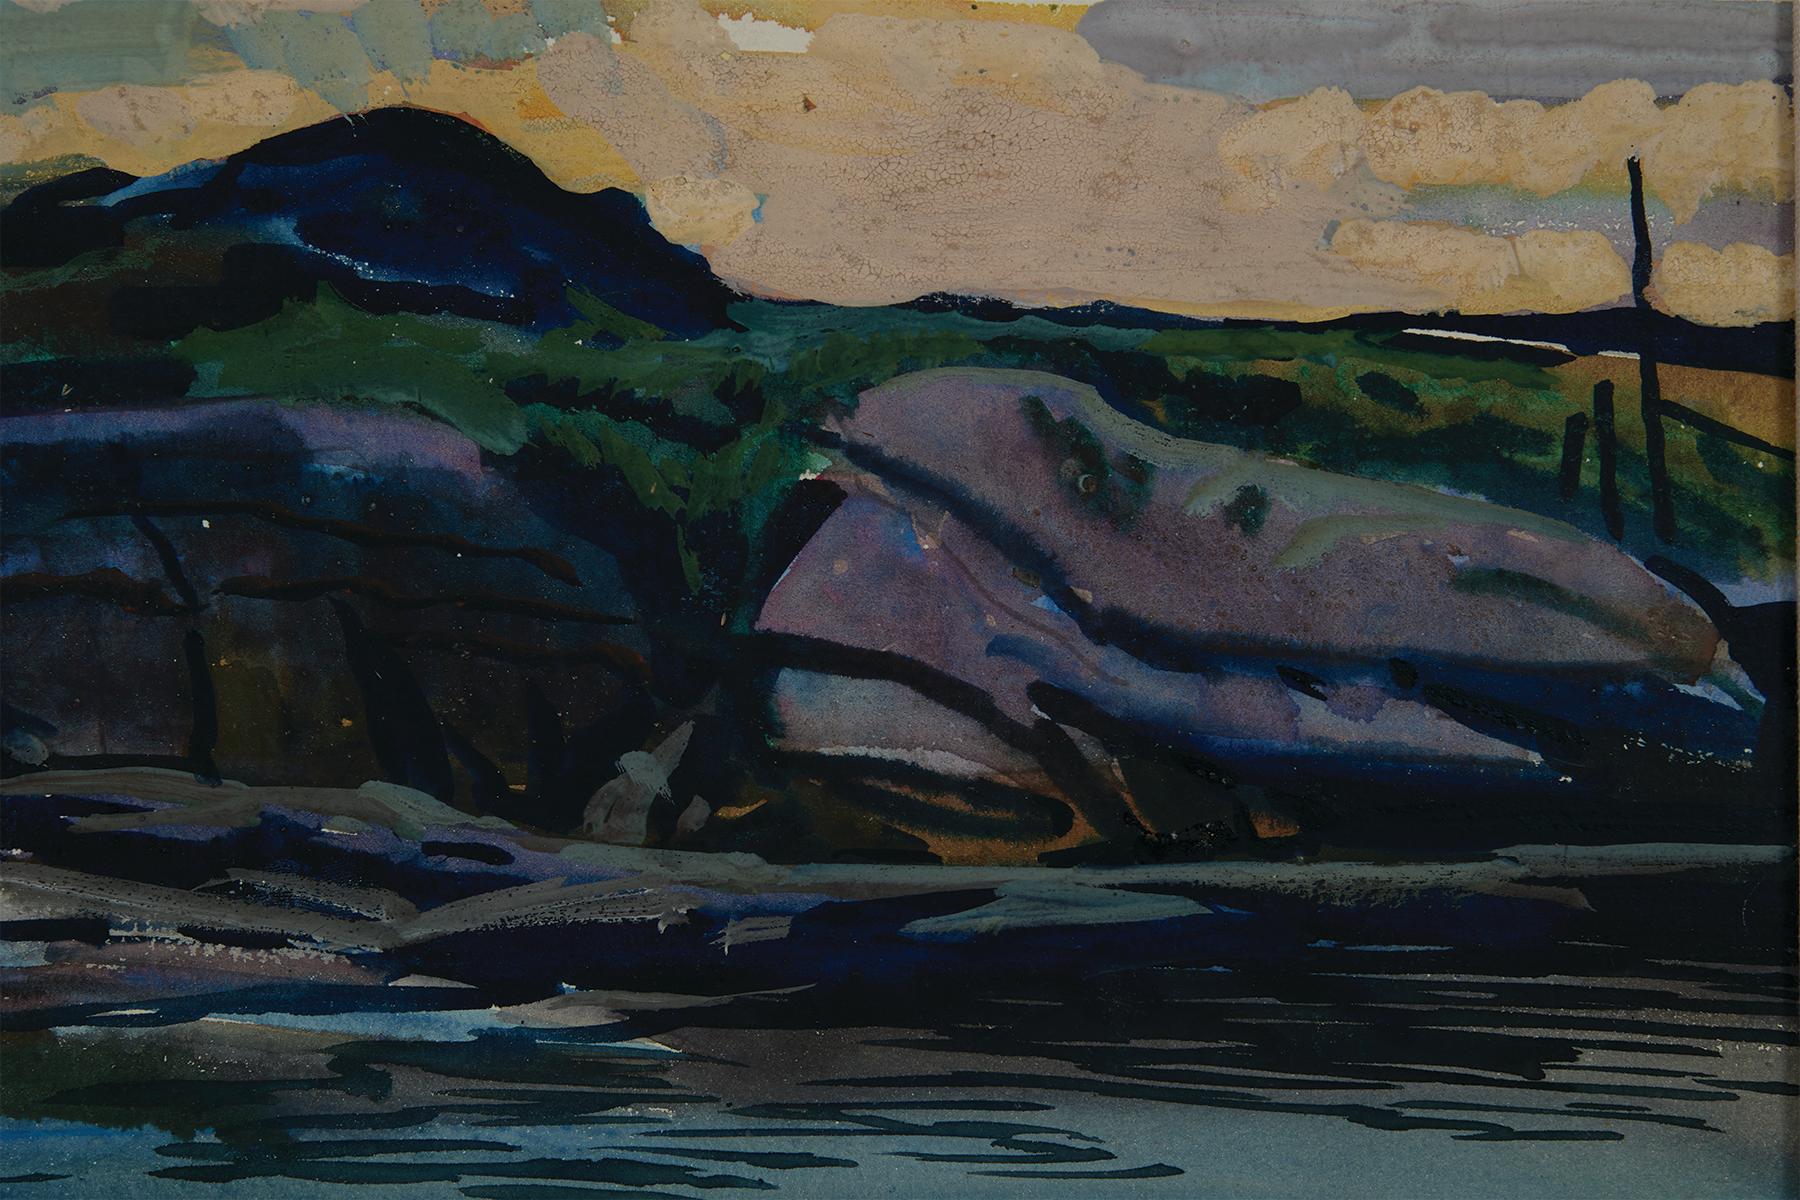 Frank Nelson Wilcox (Américain, 1887-1964)
Fisherman's Island, Boothbay, Maine, c. 1925
Aquarelle sur papier 
Signé en bas à gauche
15 x 20 pouces
20.75 x 25.75 pouces, encadré

Frank Nelson Wilcox (3 octobre 1887 - 17 avril 1964) était un artiste